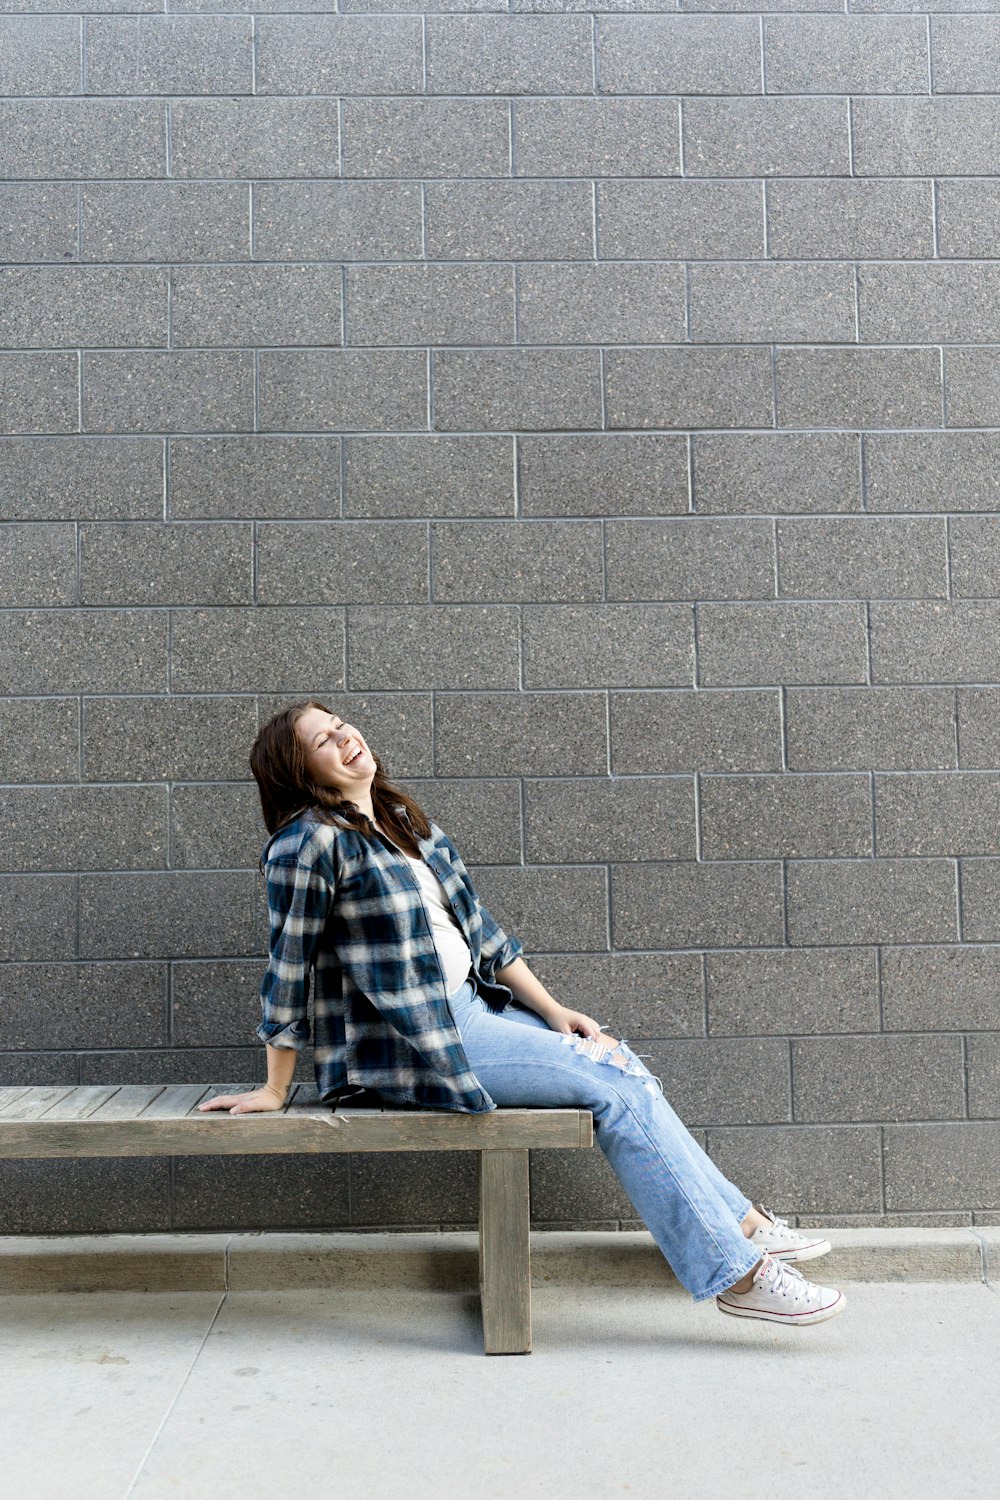 Eine Frau sitzt auf einer Bank vor einer Ziegelmauer